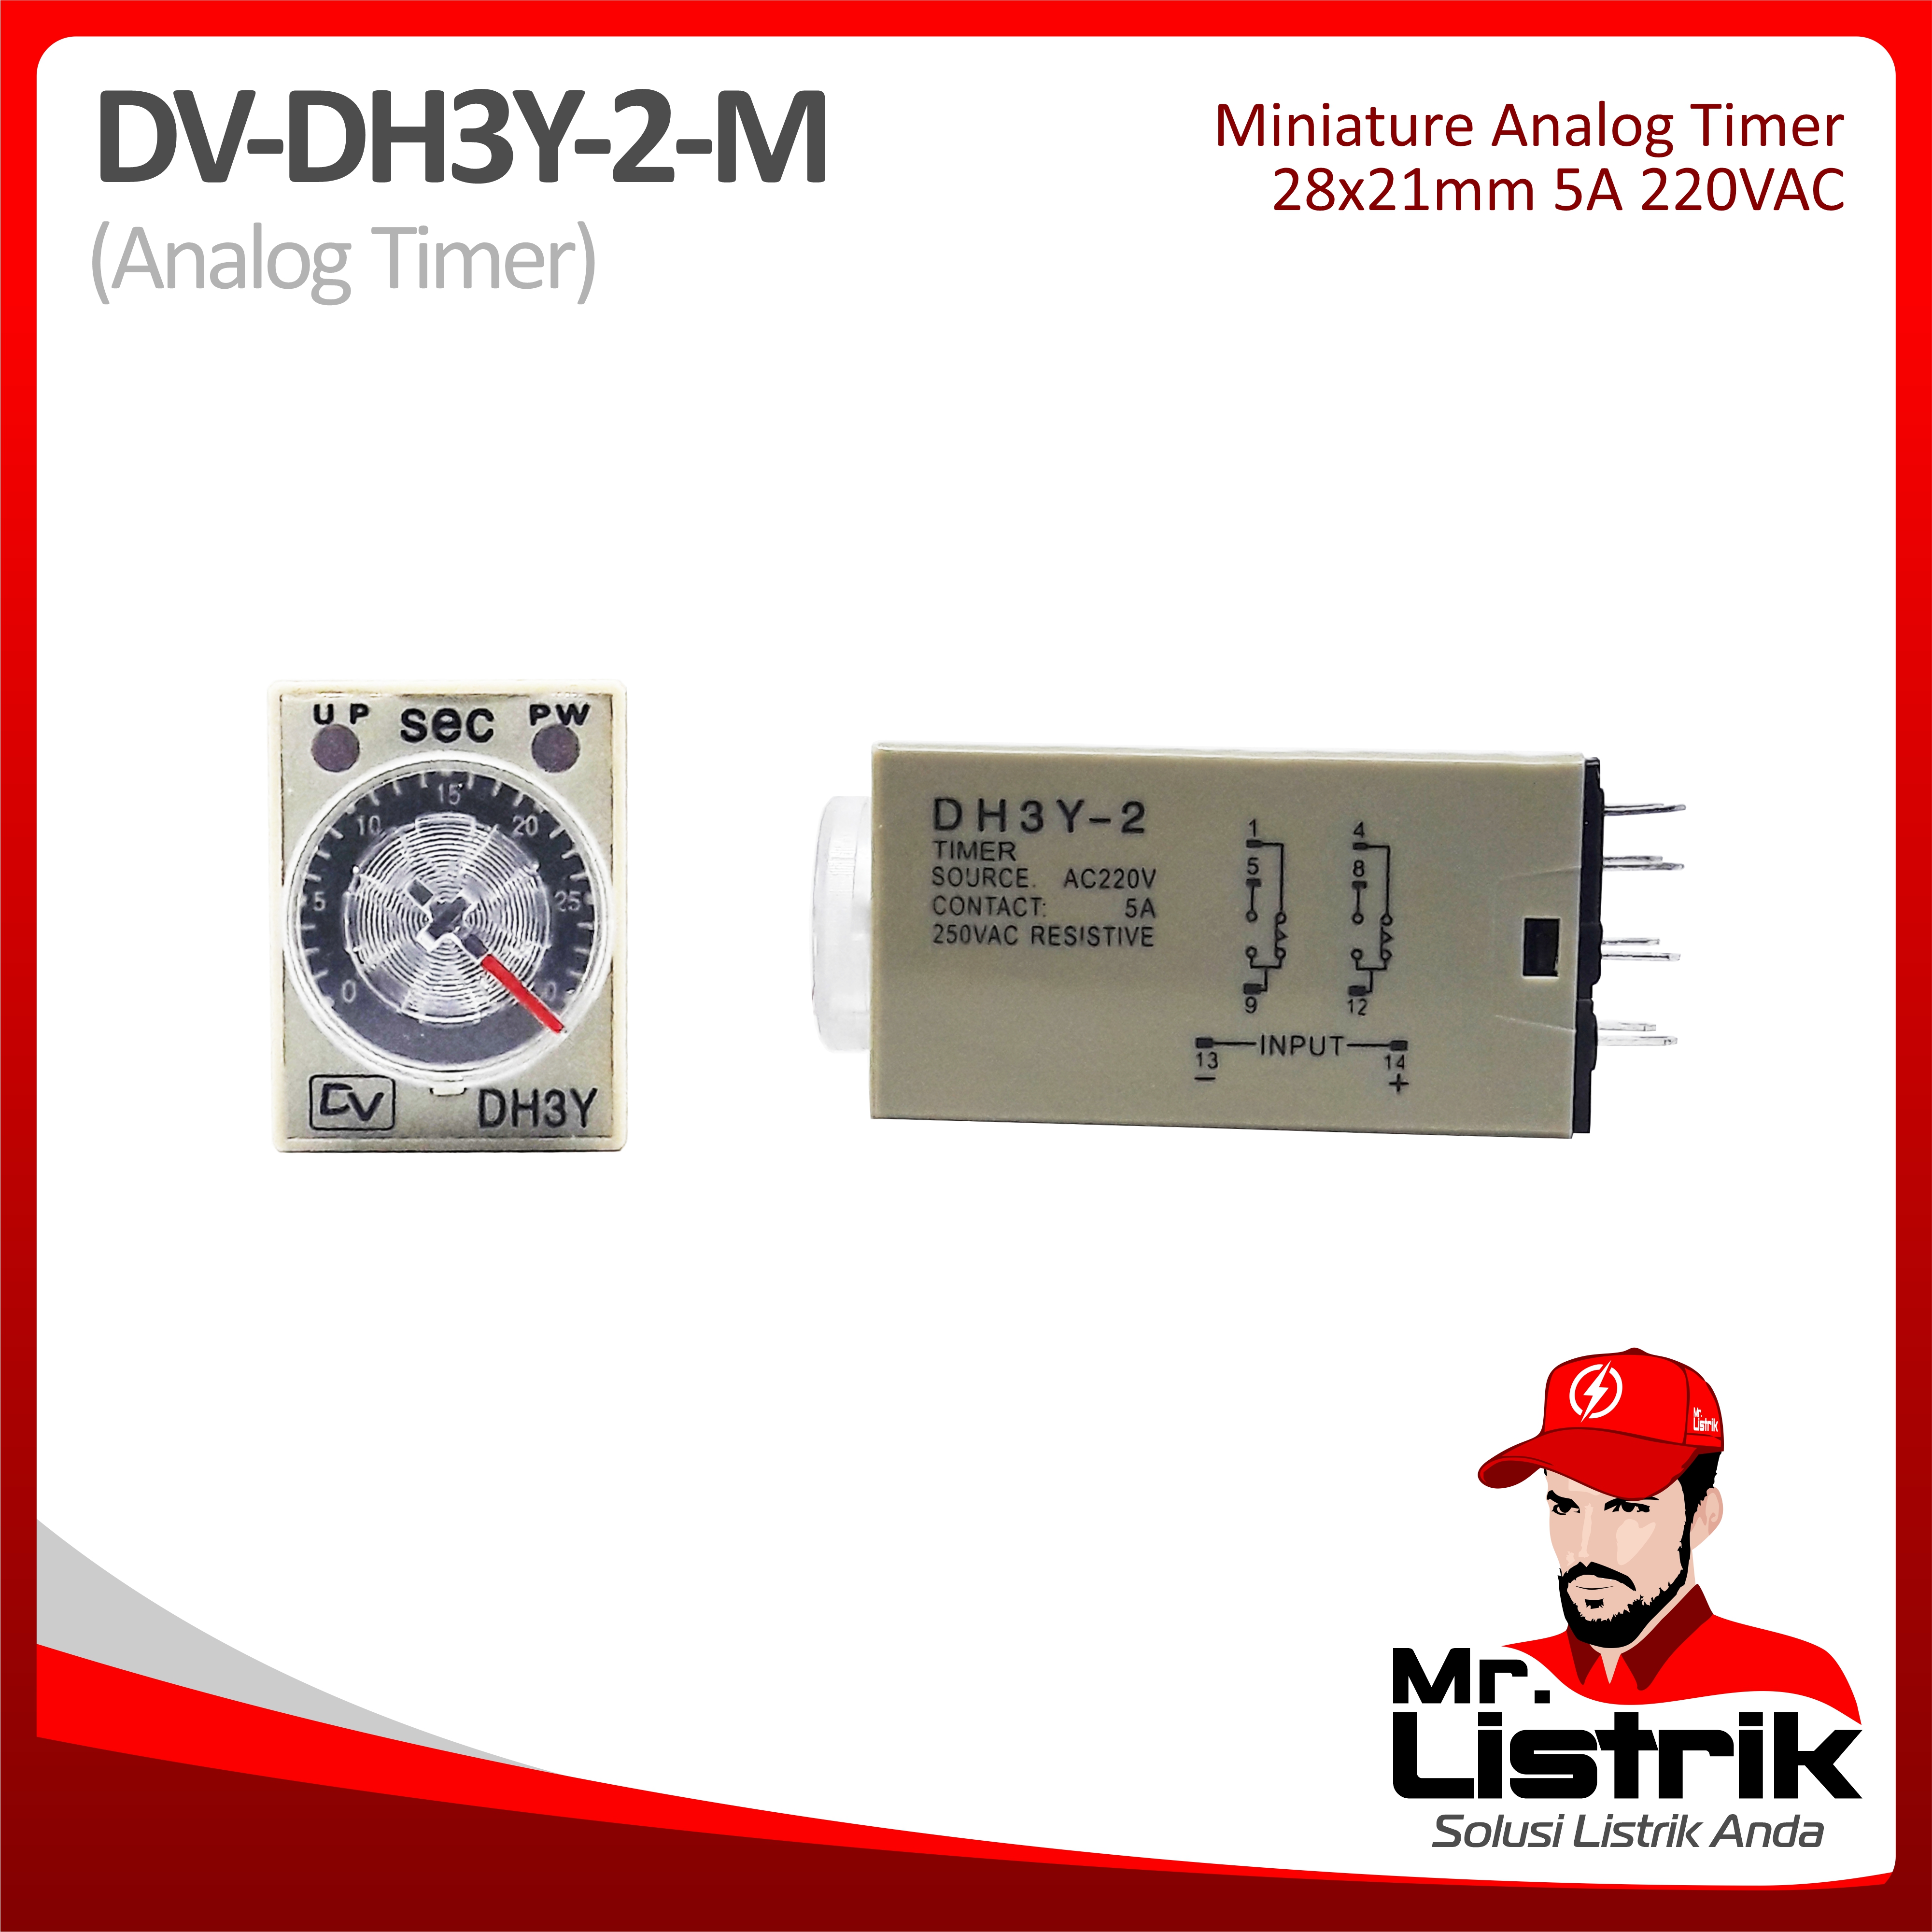 Miniature Analog Timer DV DH3Y-2-M